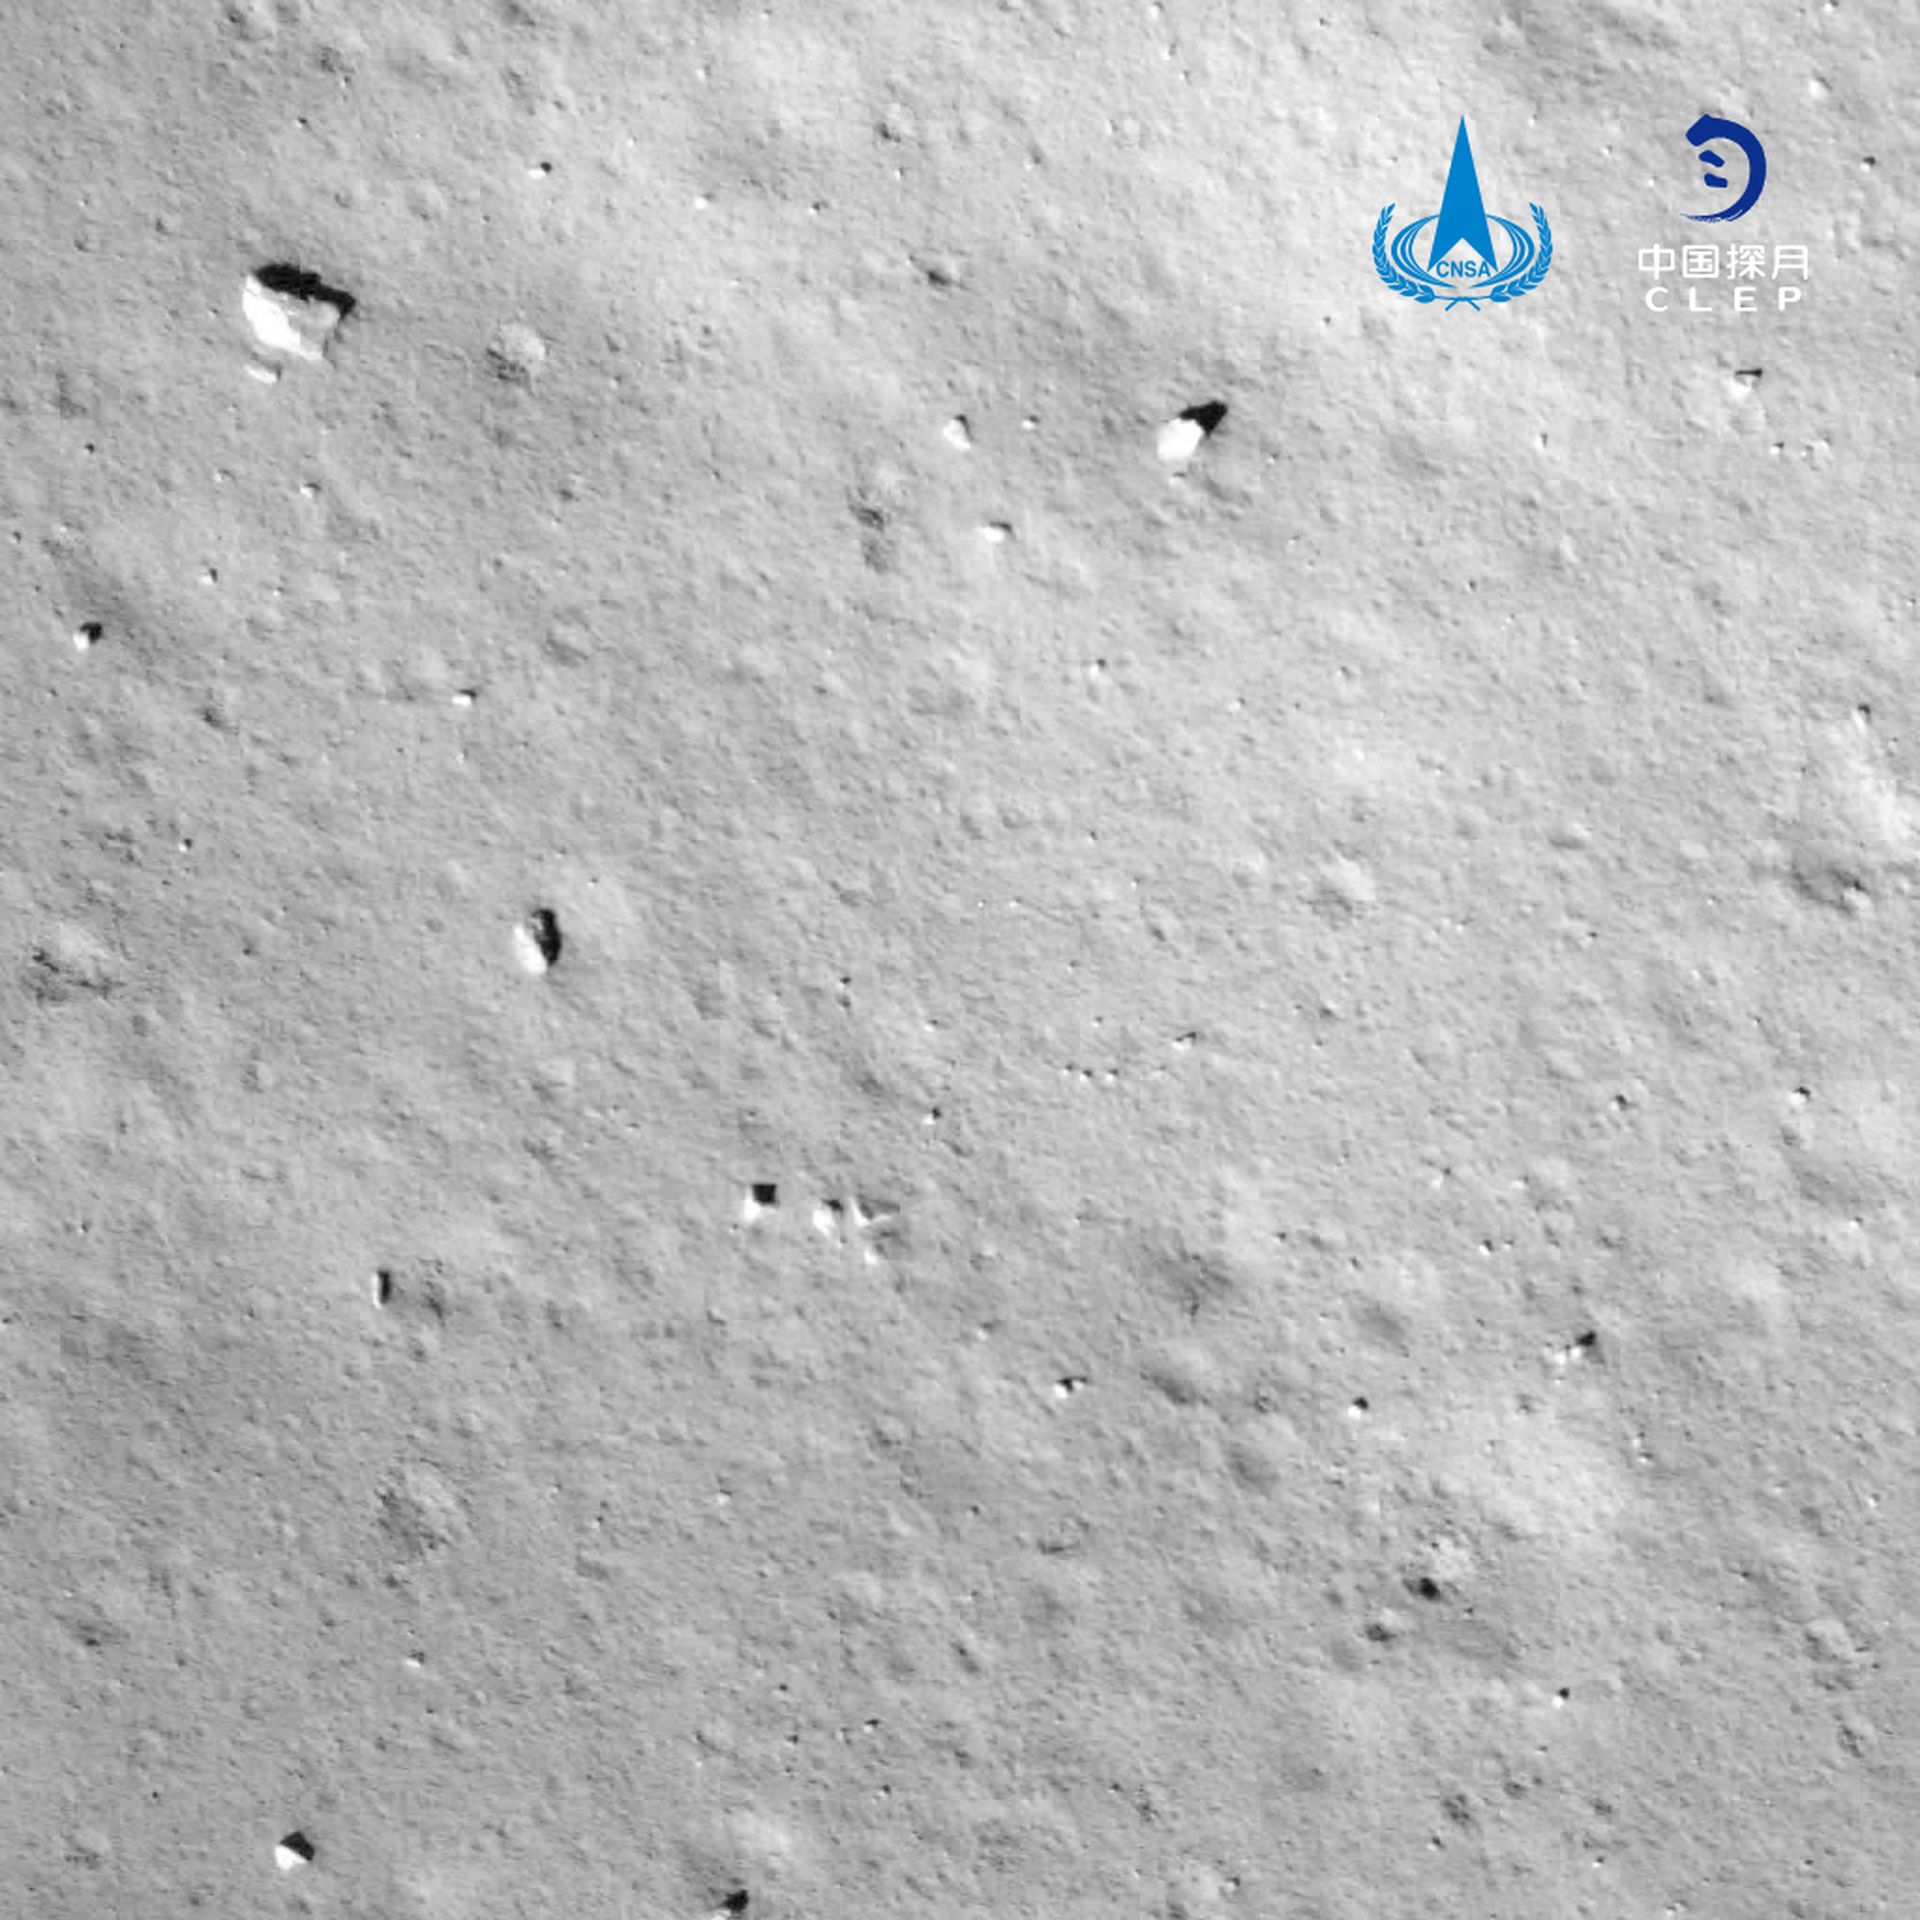 这是嫦娥五号探测器动力下降过程相机拍摄的图像。（新华社）